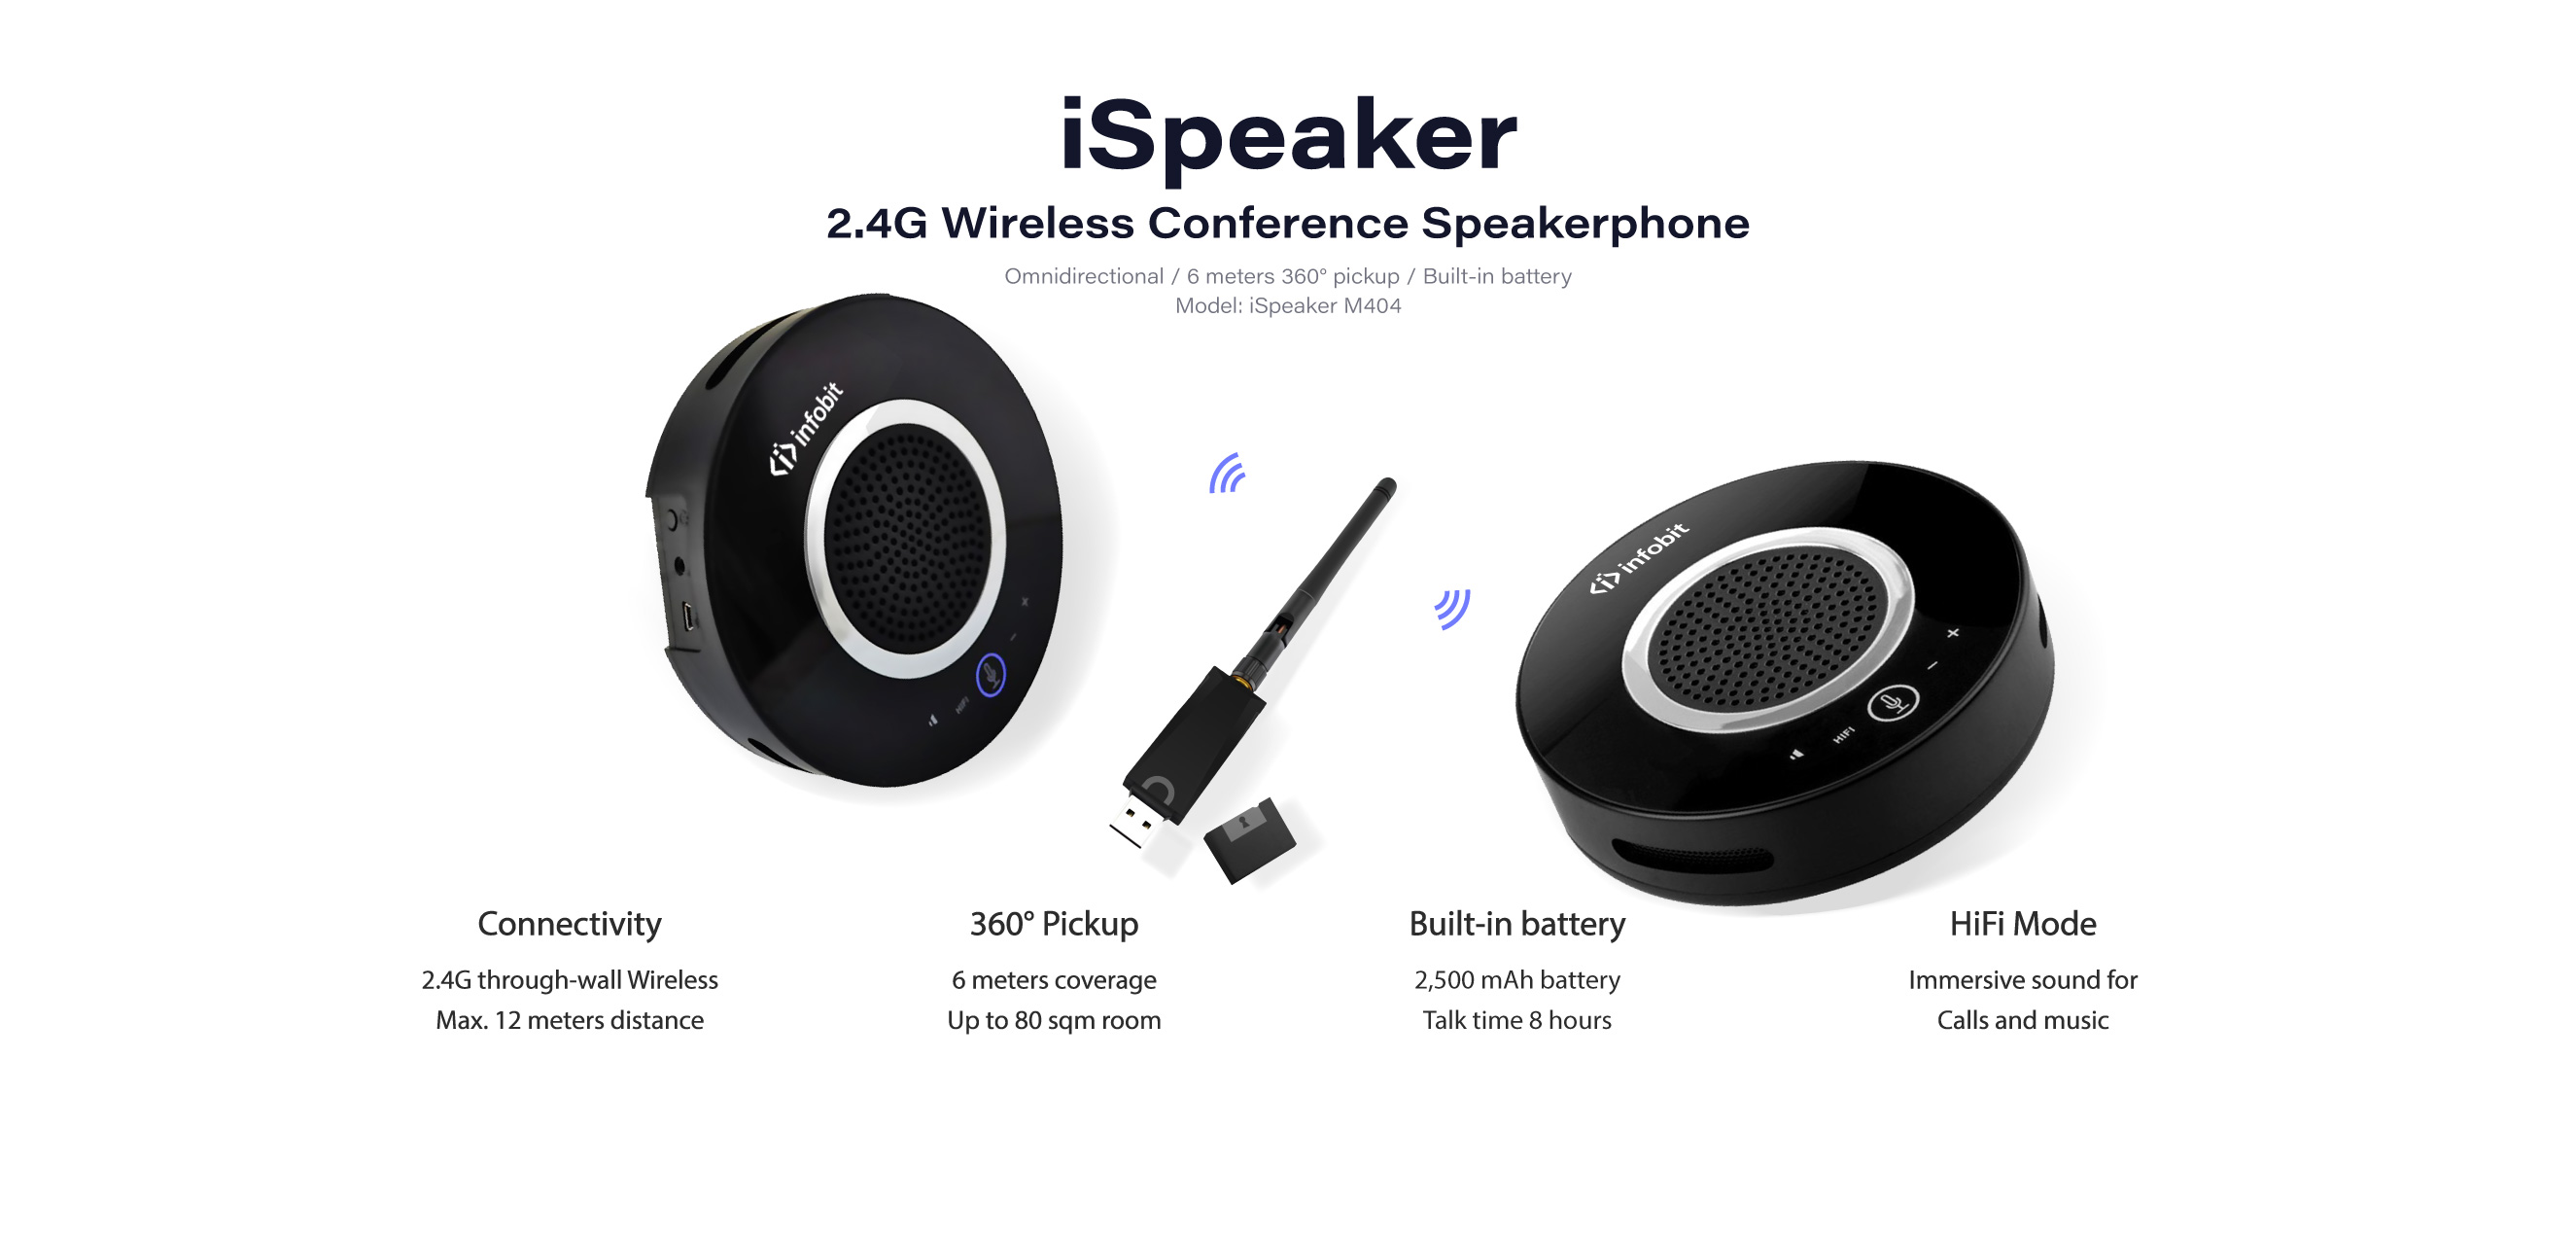 iSpeaker M404 cascaded speakerphones 2.4G